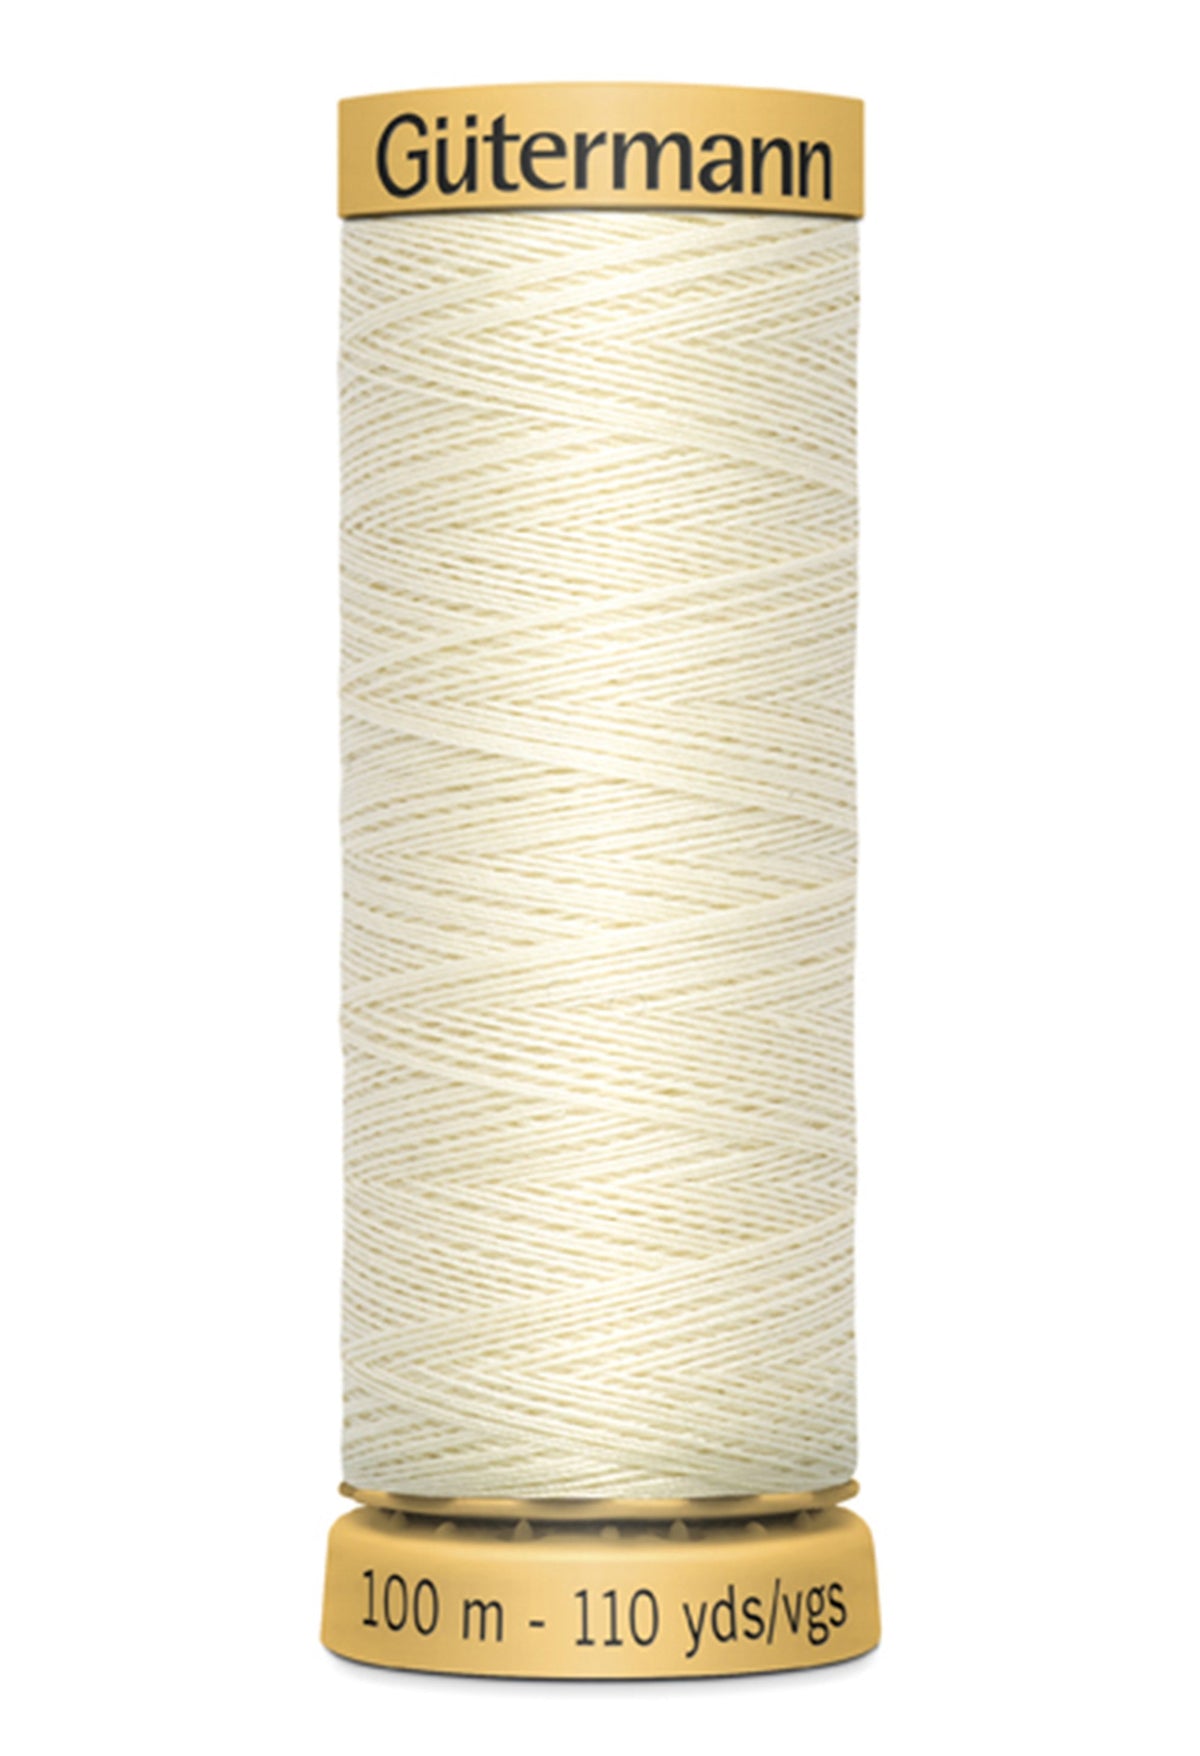 Gutermann Natural Cotton Thread 1040 Ecru 110yd